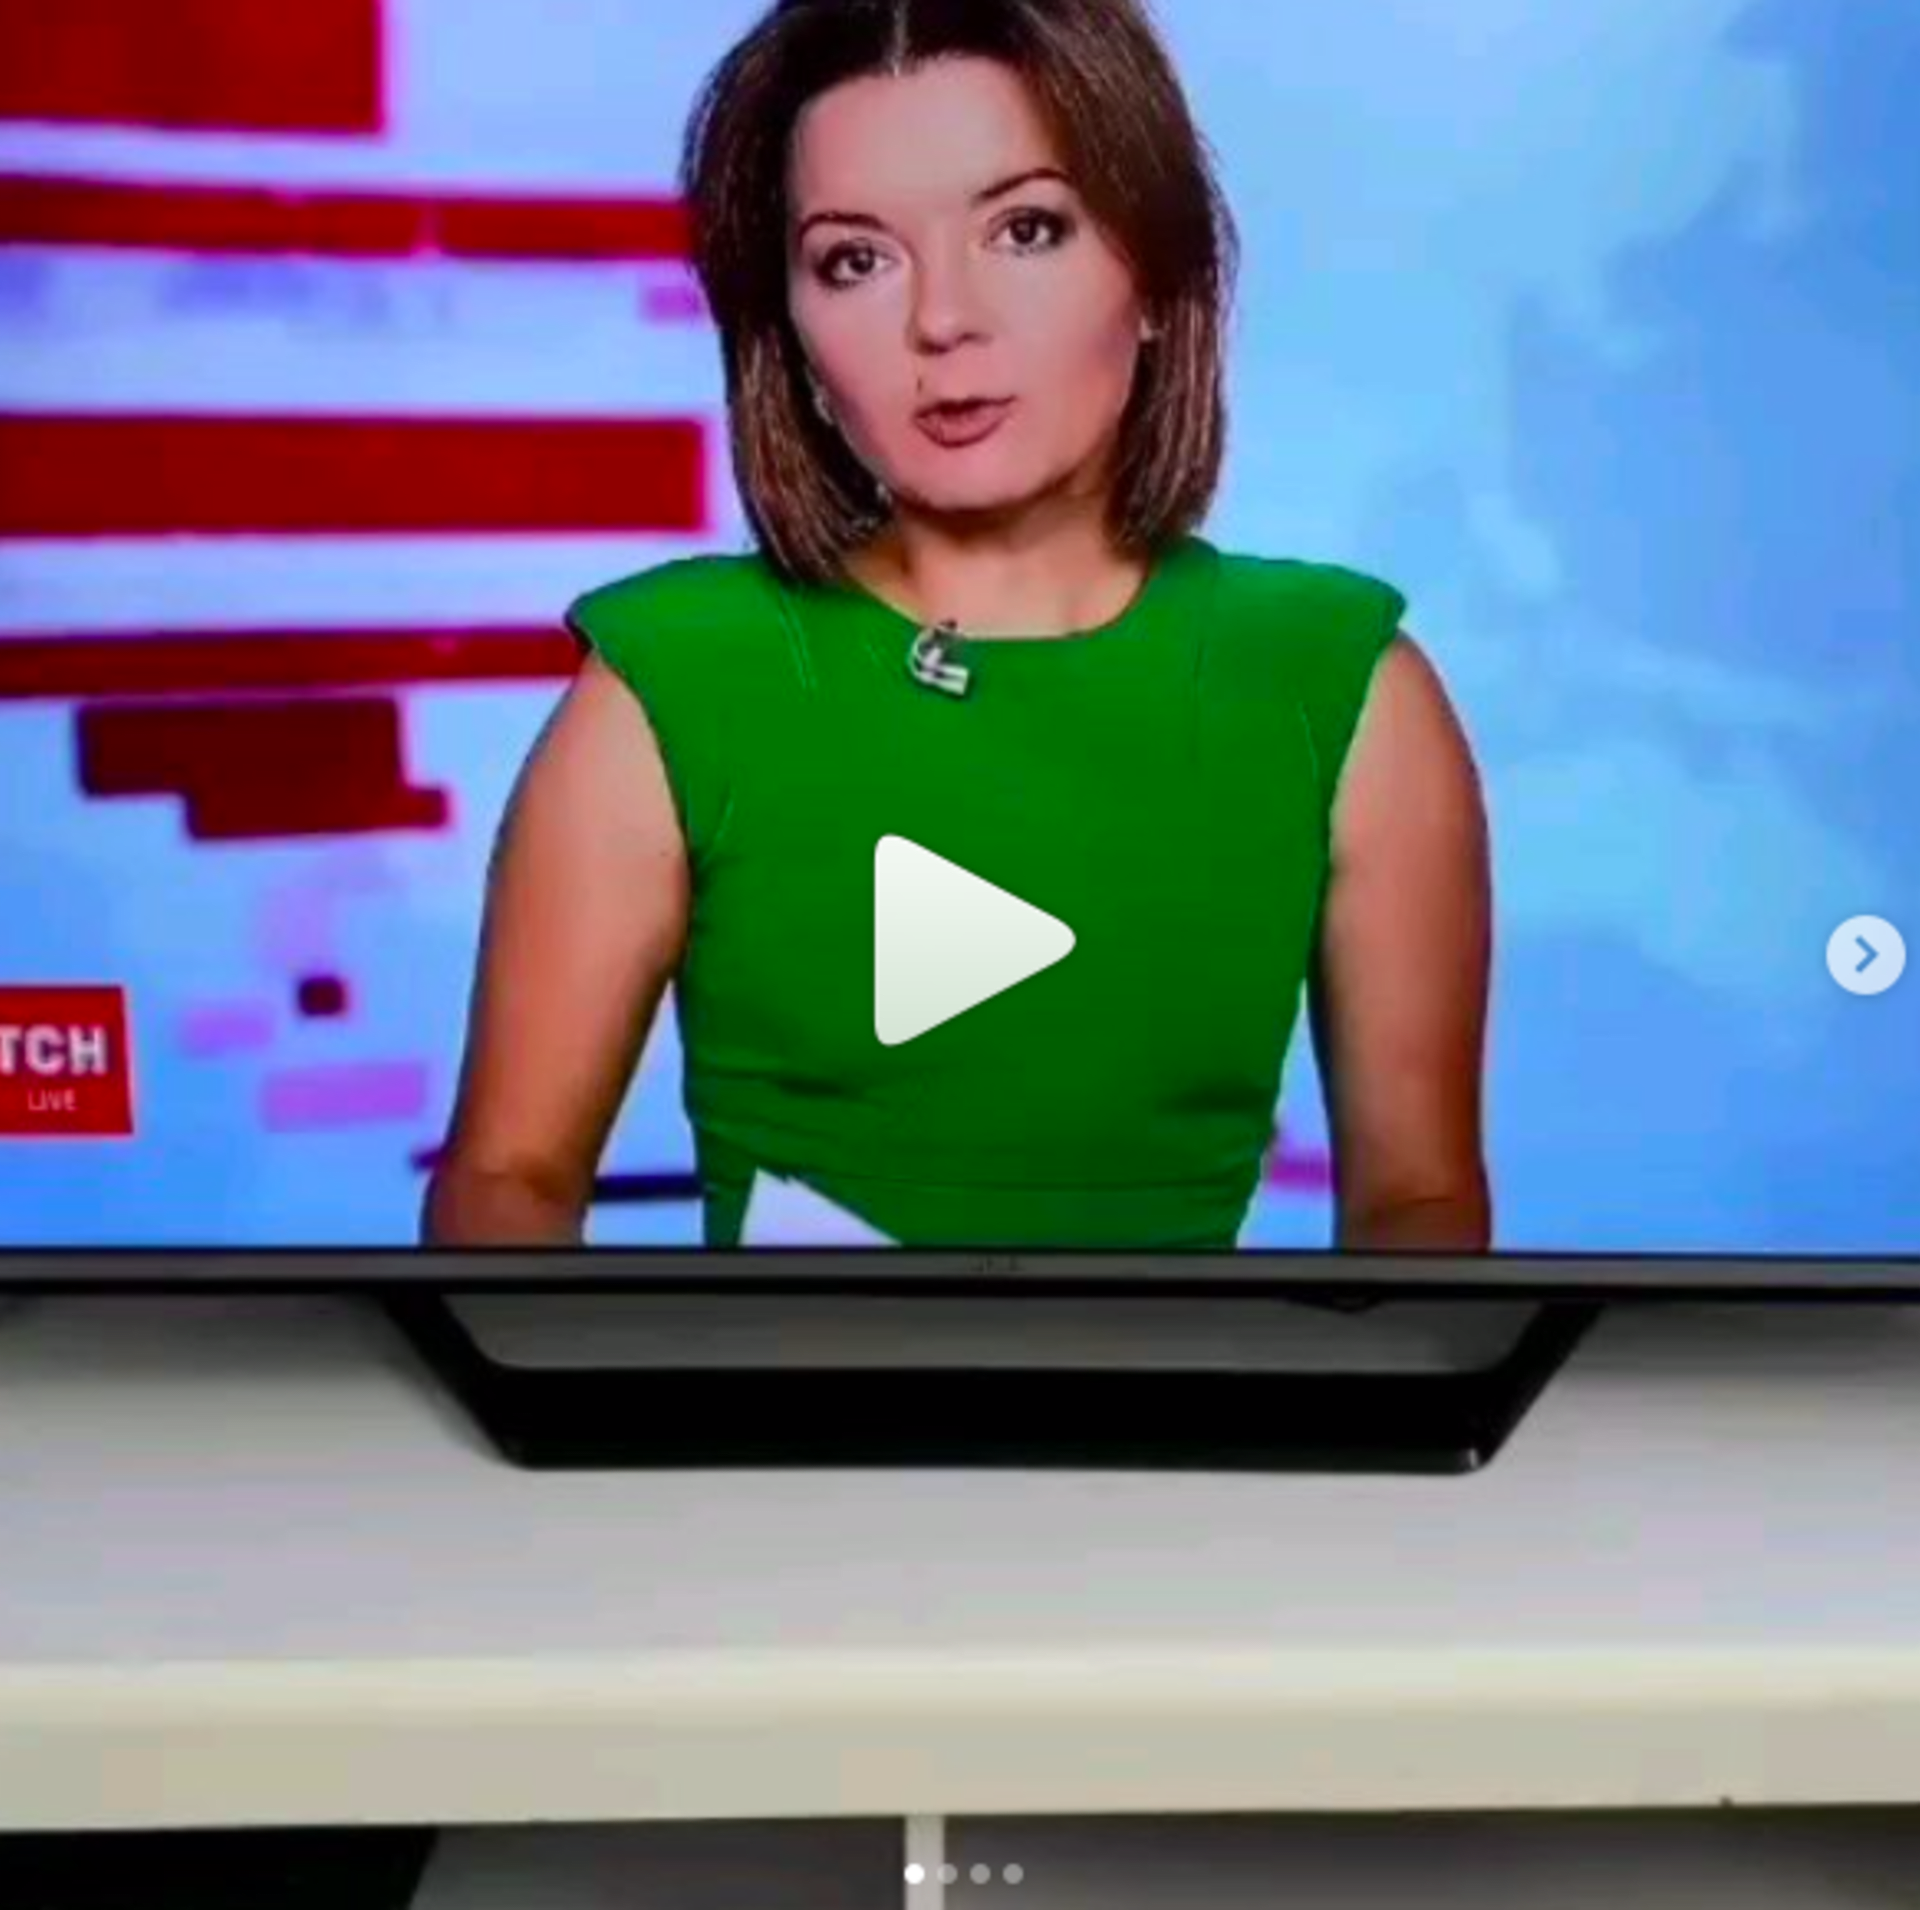 Ukrajinské moderátorce vypadl zub v živém televizním vysílání